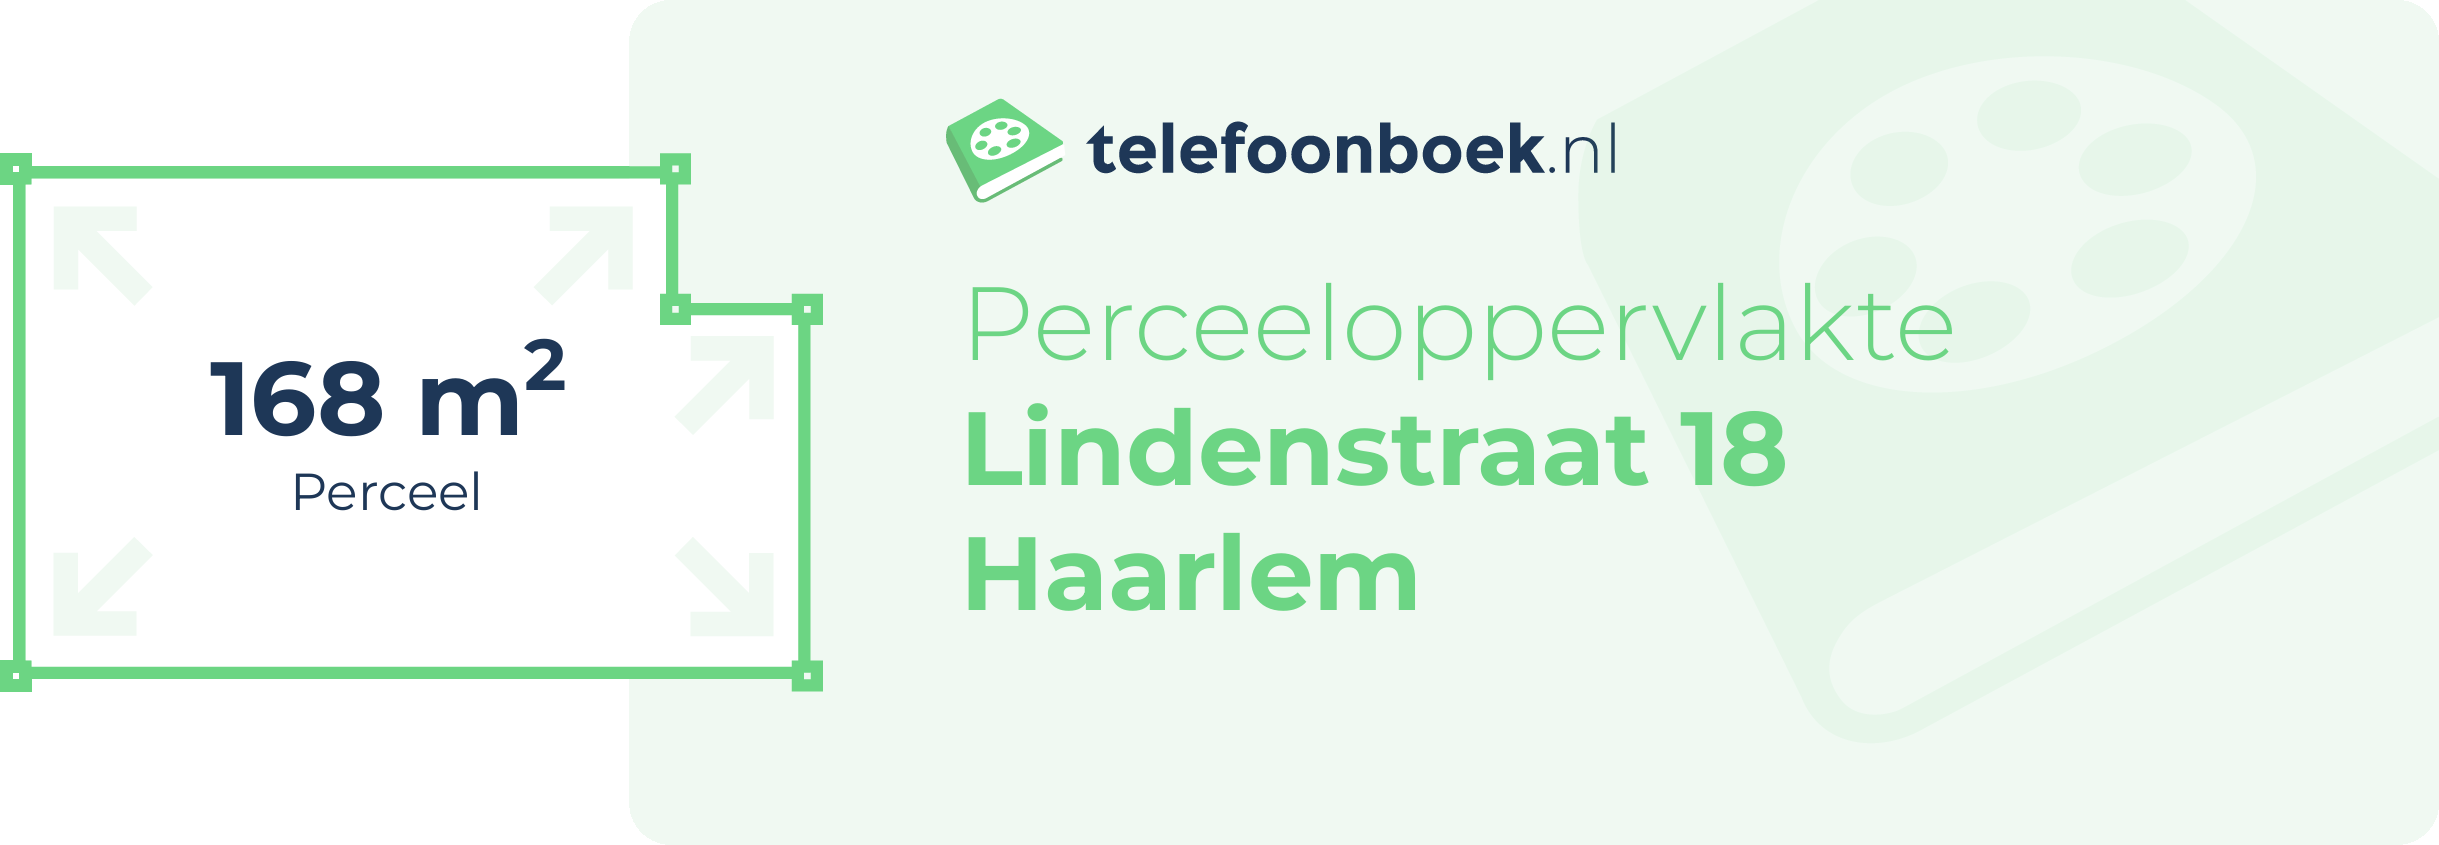 Perceeloppervlakte Lindenstraat 18 Haarlem